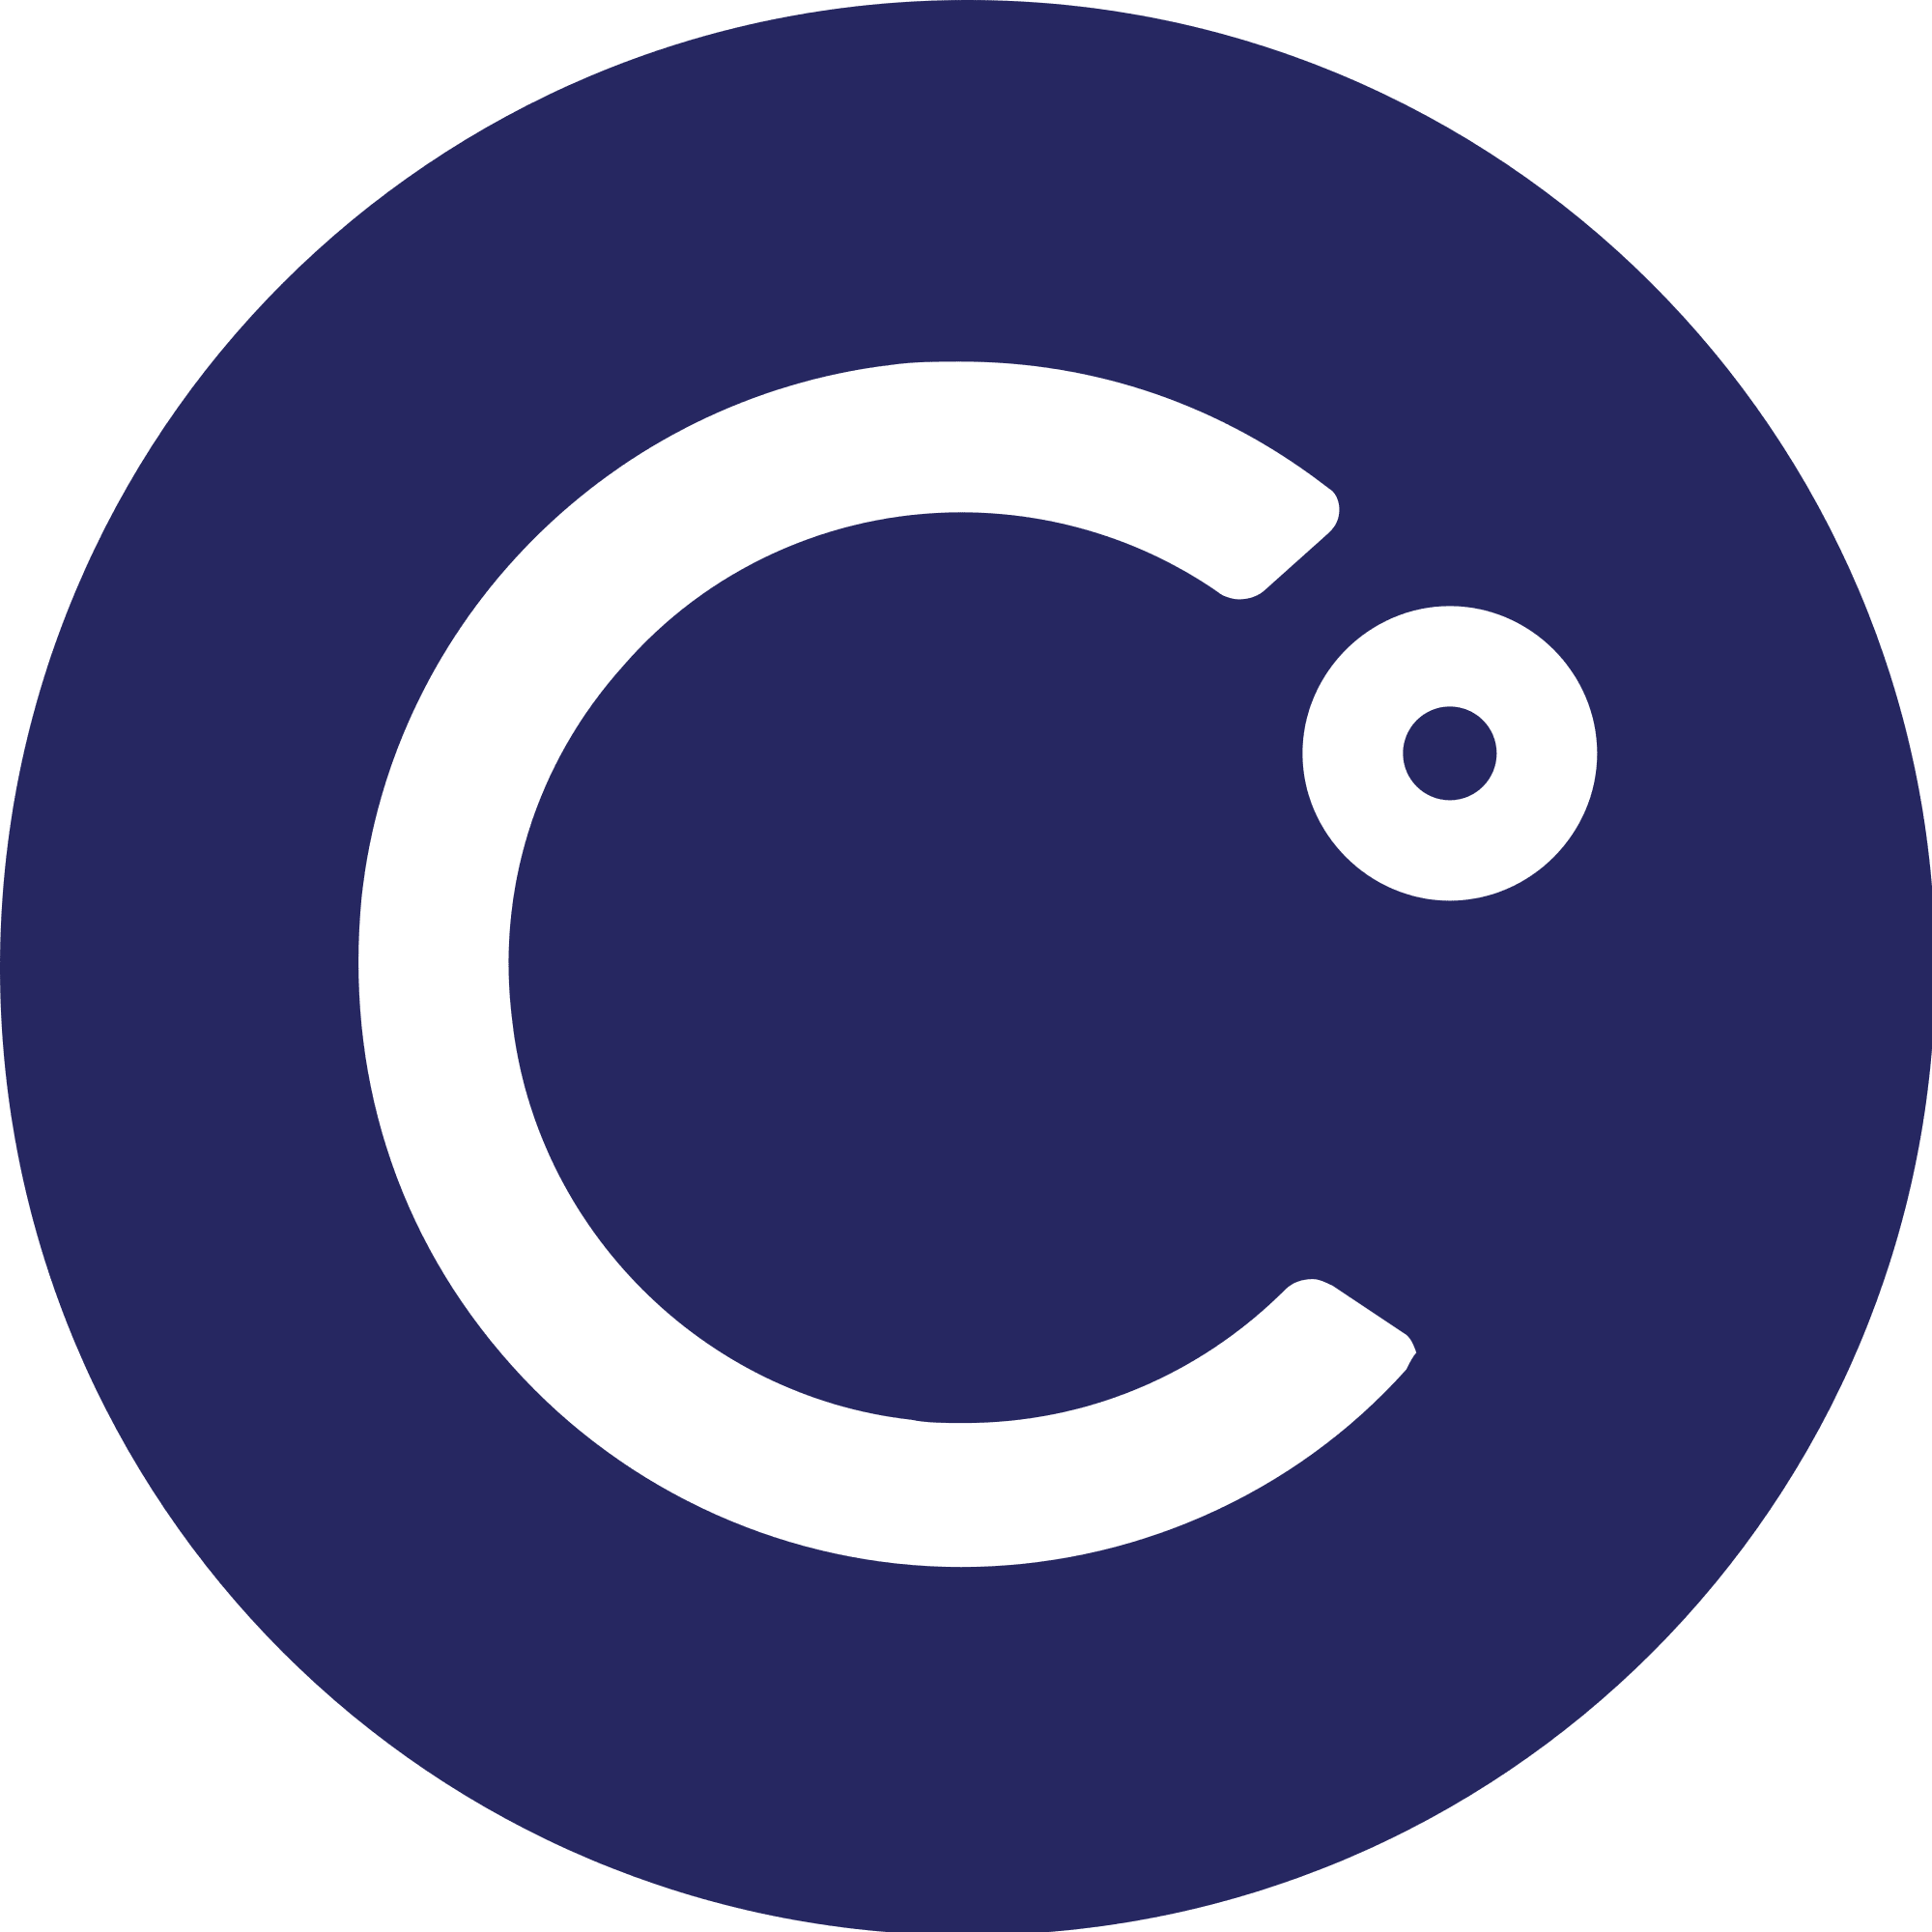 Celsius logo in png format